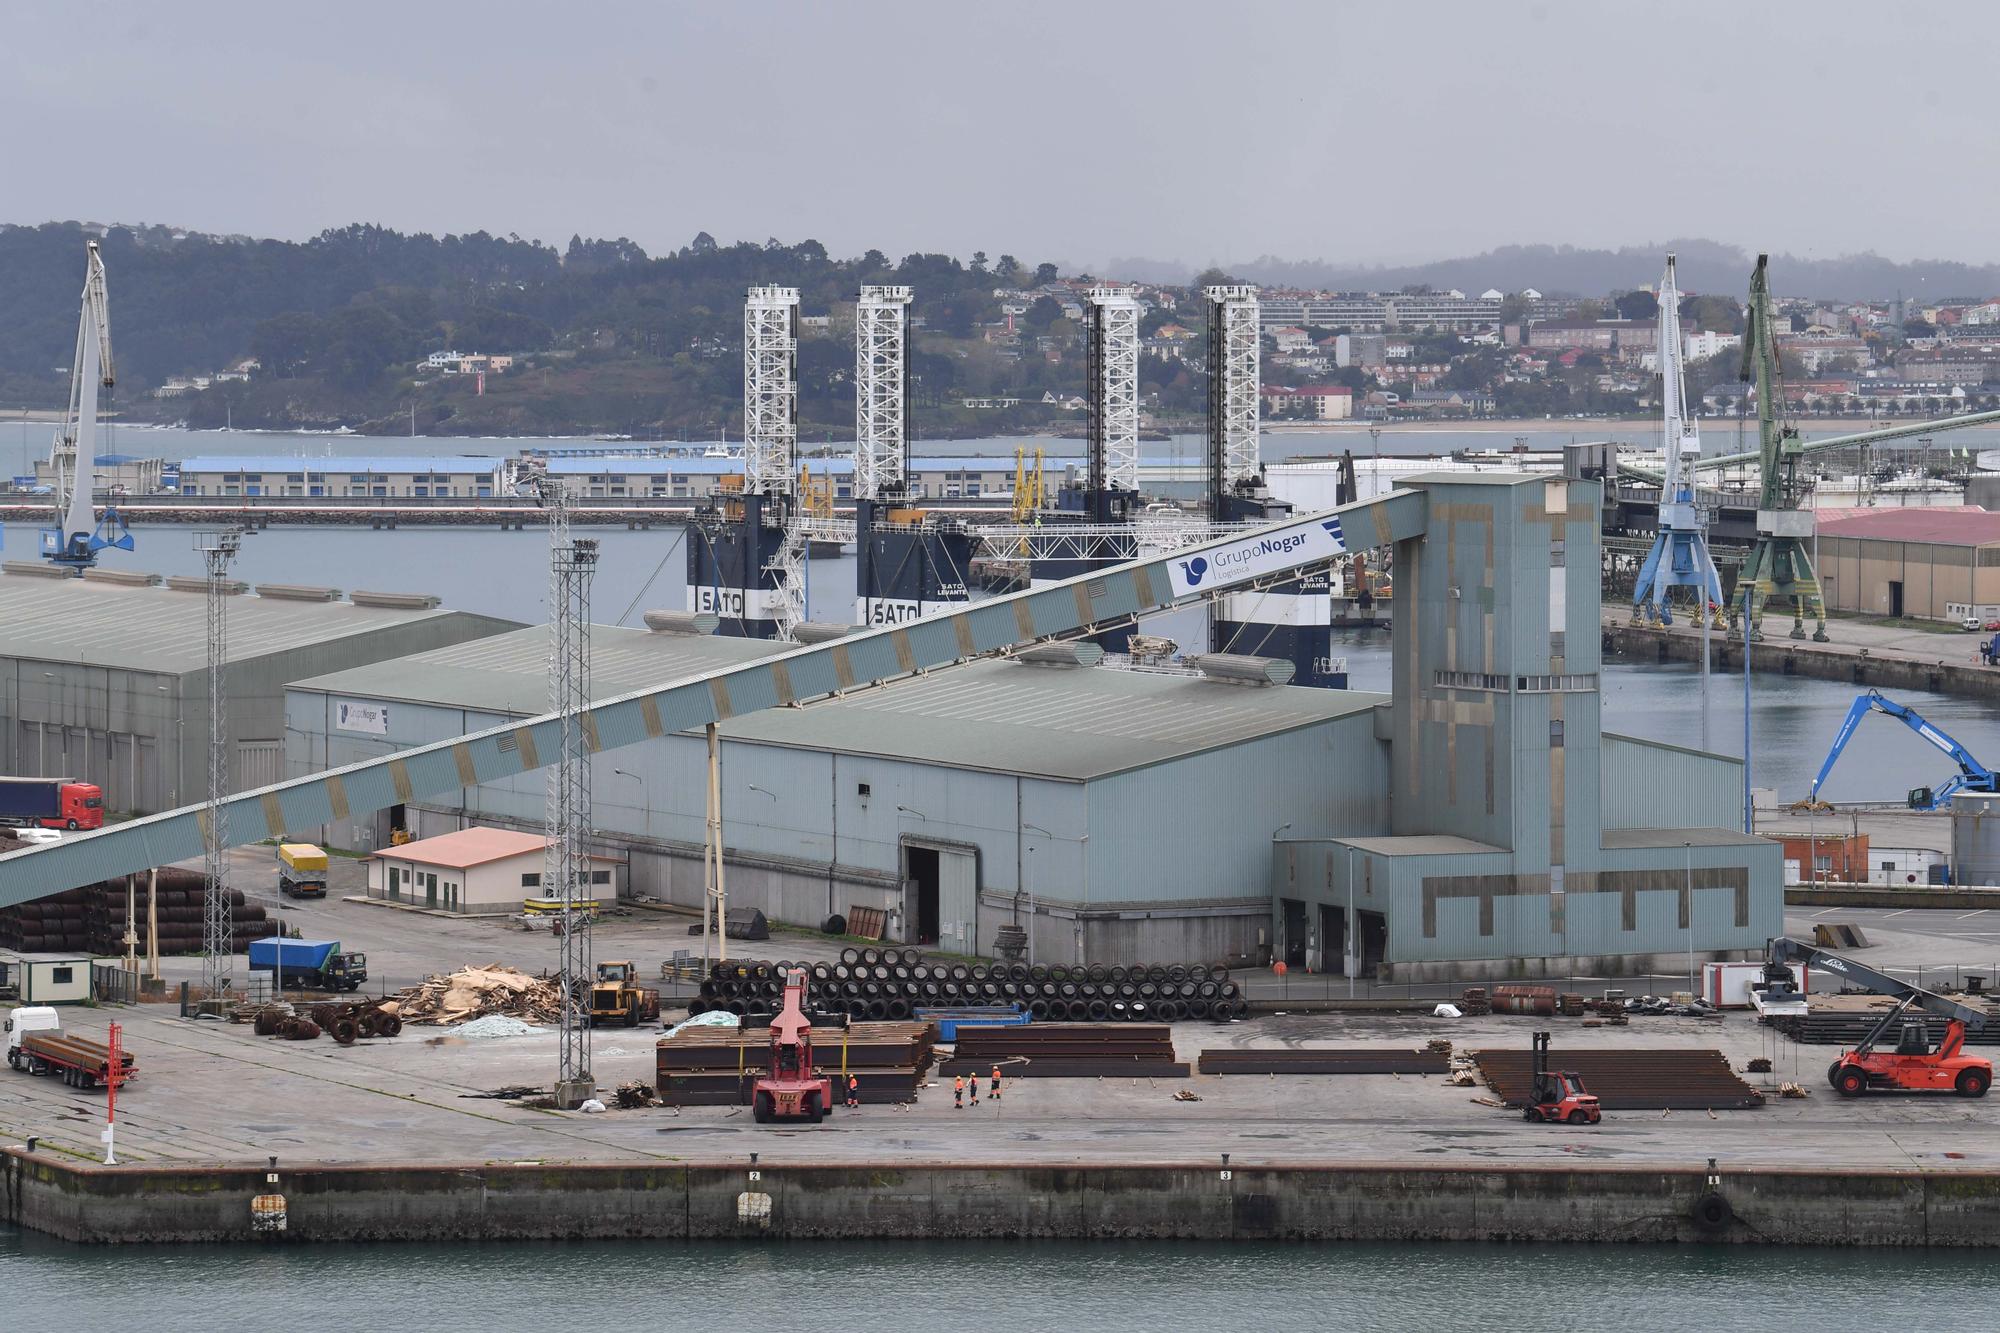 A Coruña, a vista de crucero